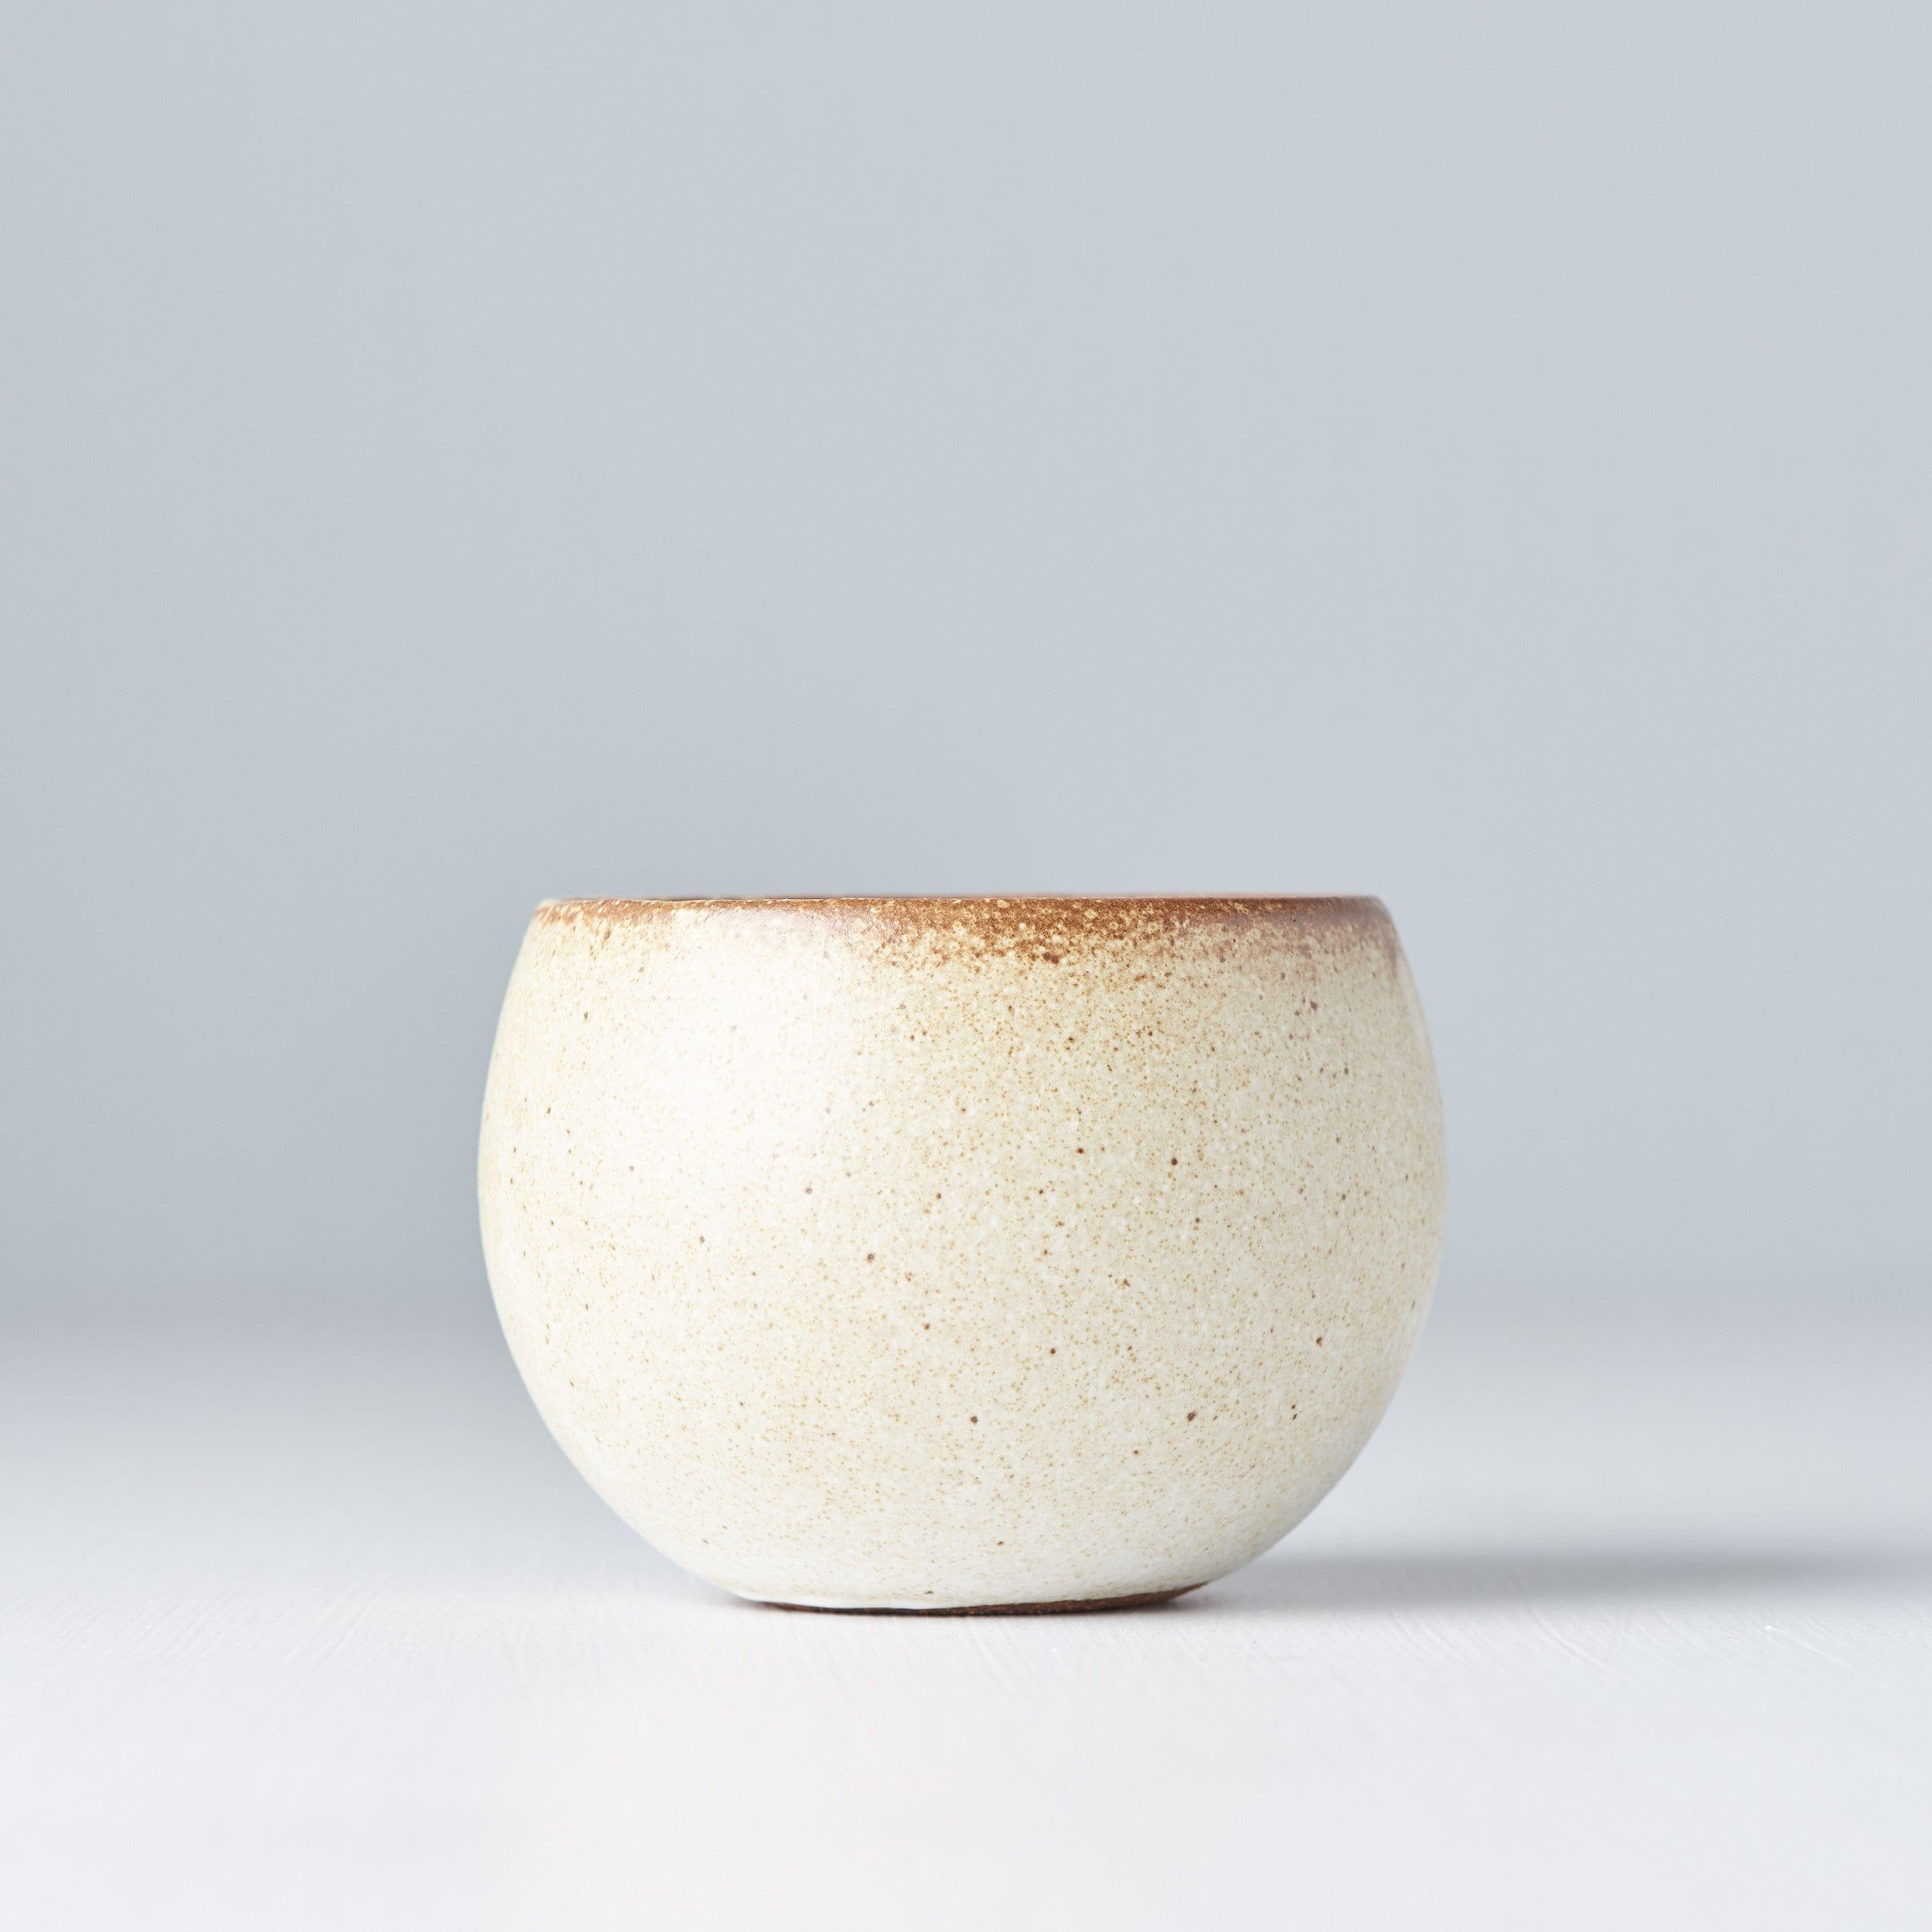 Pahar din ceramica, Beige Bej, 180 ml (3)